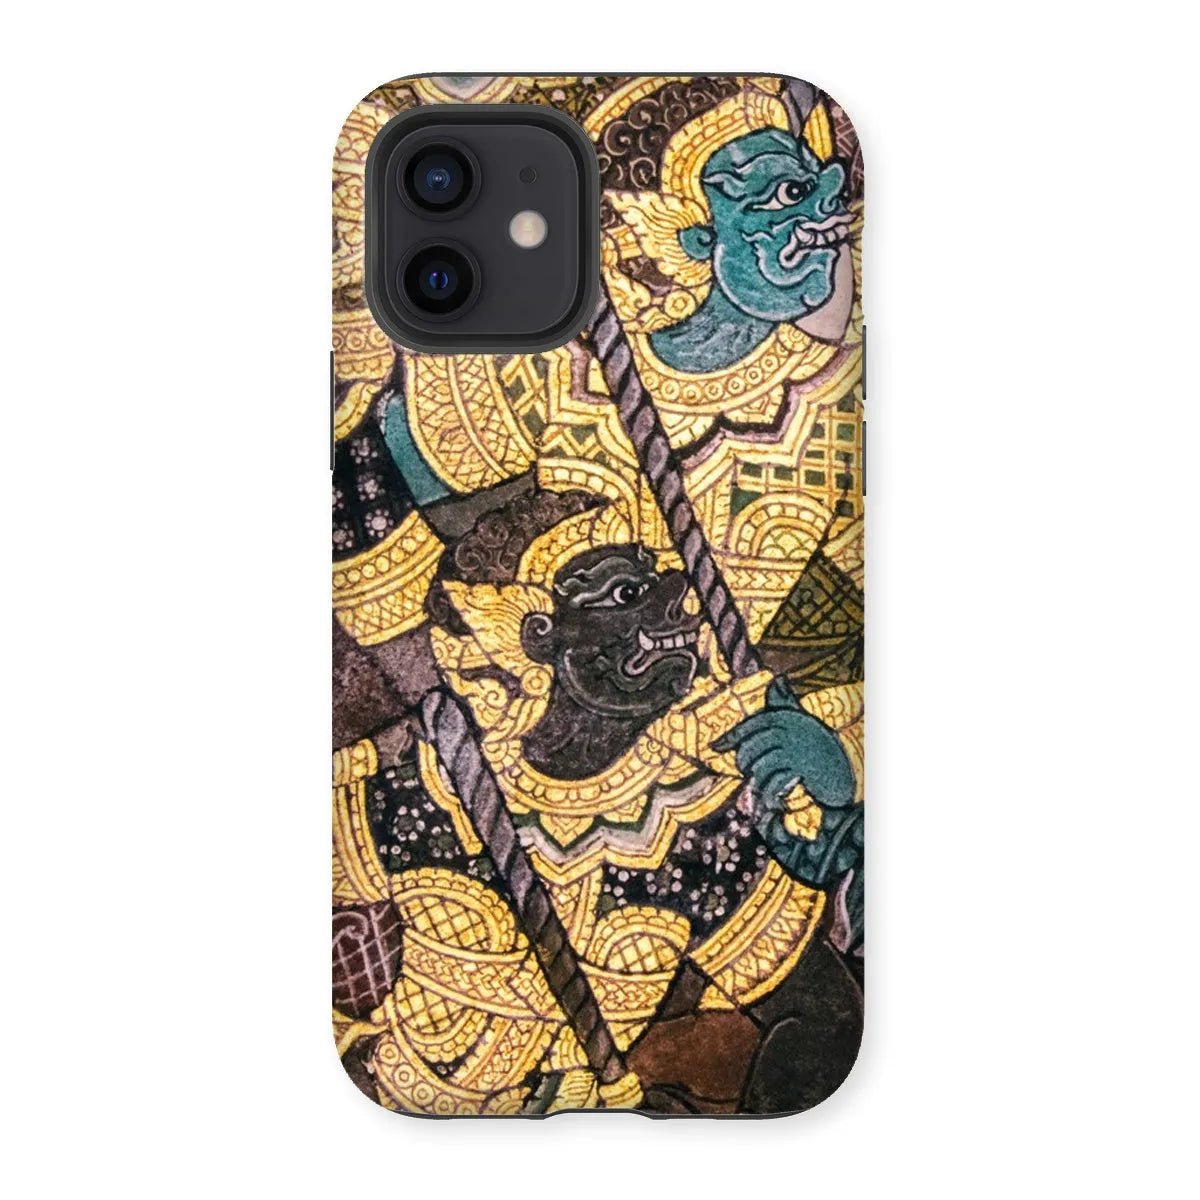 Action Men - Ancient Thai Temple Art Phone Case - Iphone 12 / Matte - Mobile Phone Cases - Aesthetic Art